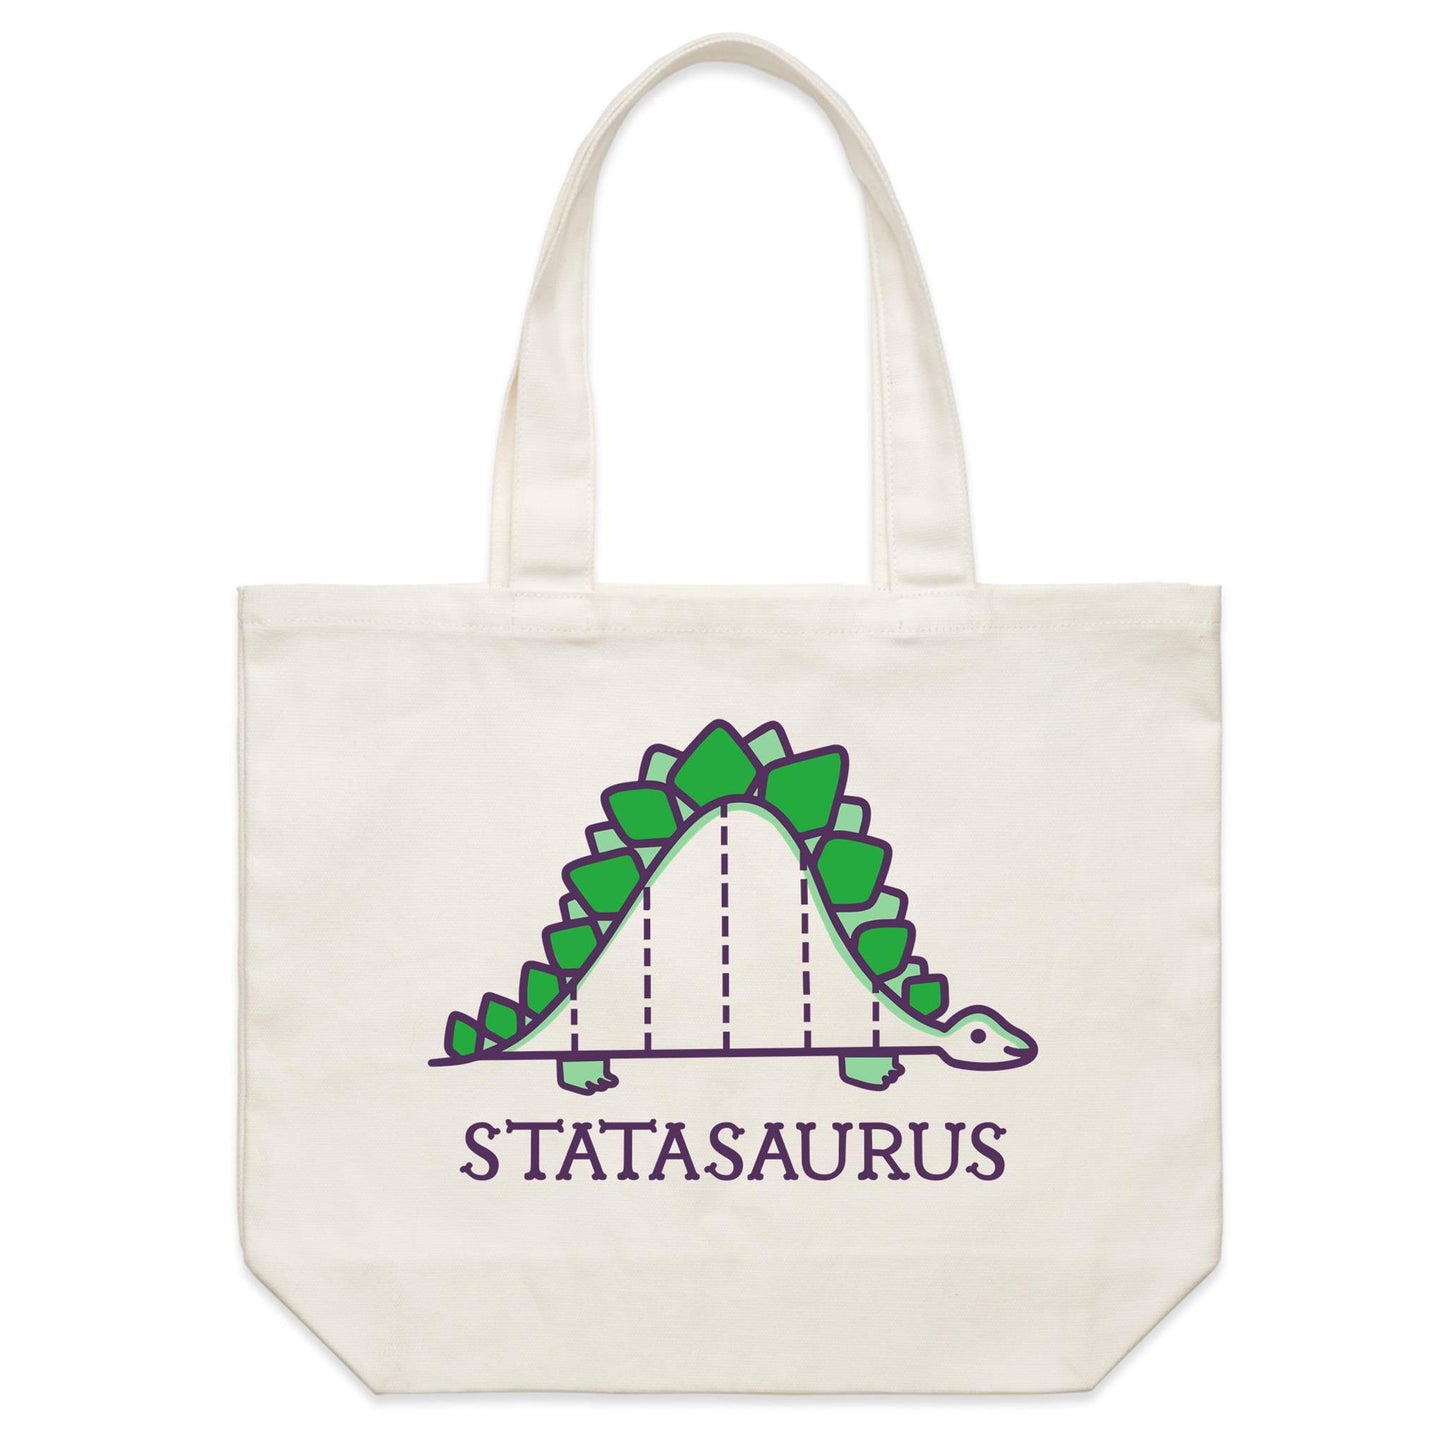 Statasaurus - Shoulder Canvas Tote Bag Default Title Shoulder Tote Bag